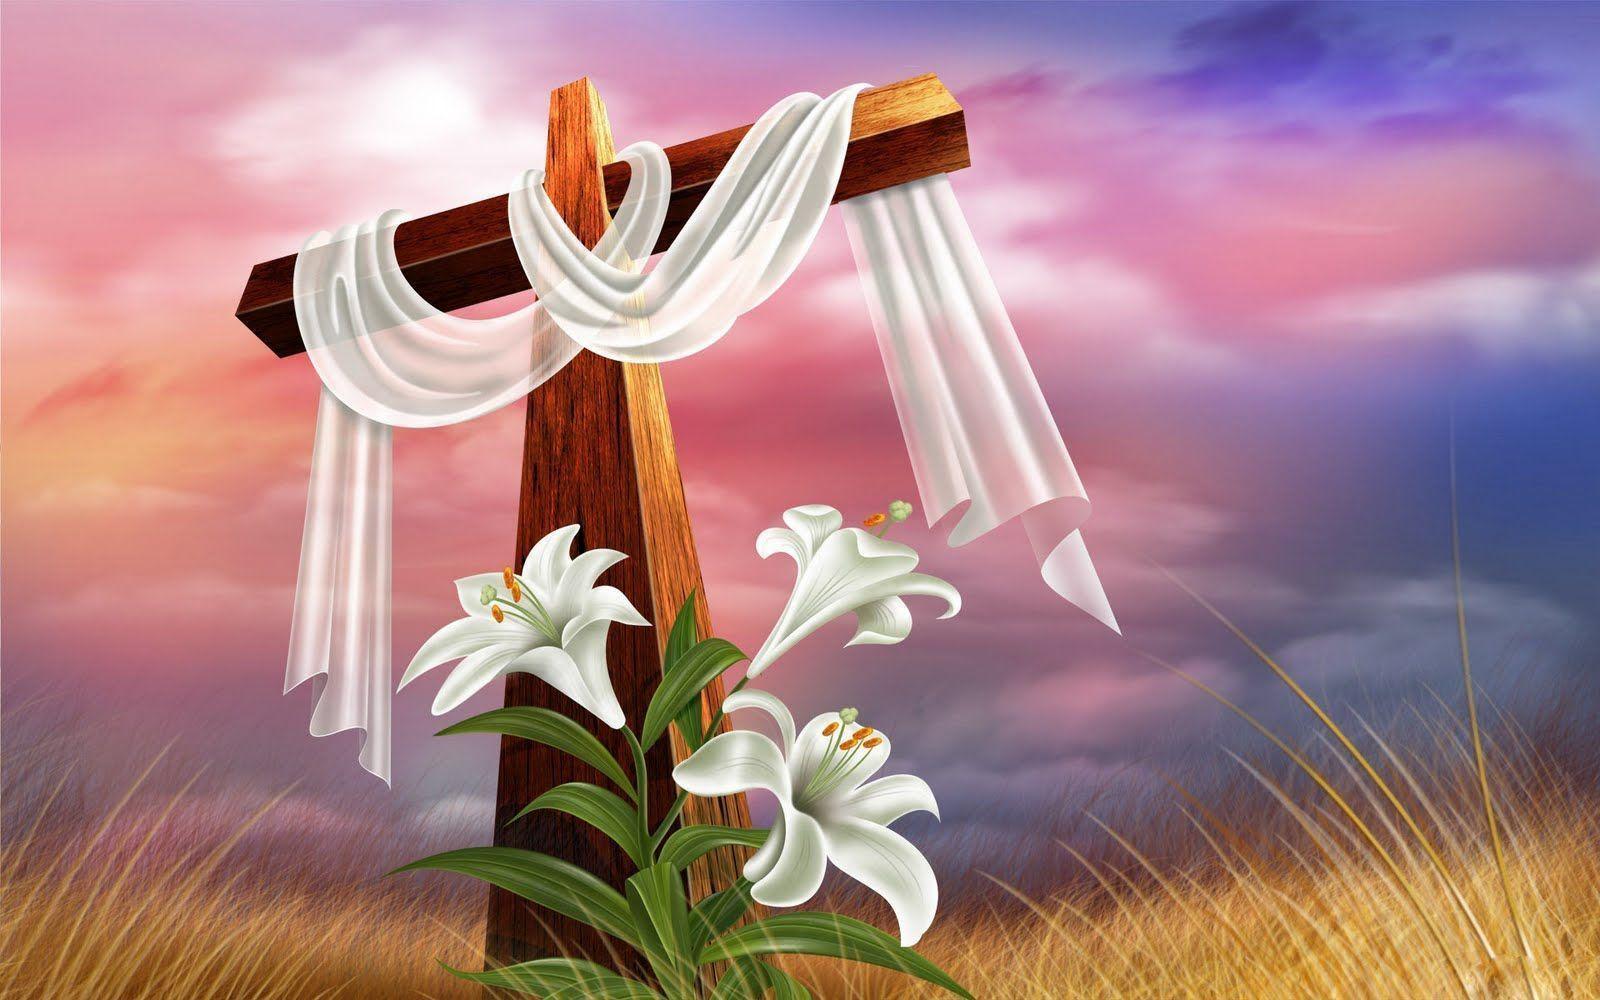 Christian Easter Background, wallpaper, Christian Easter